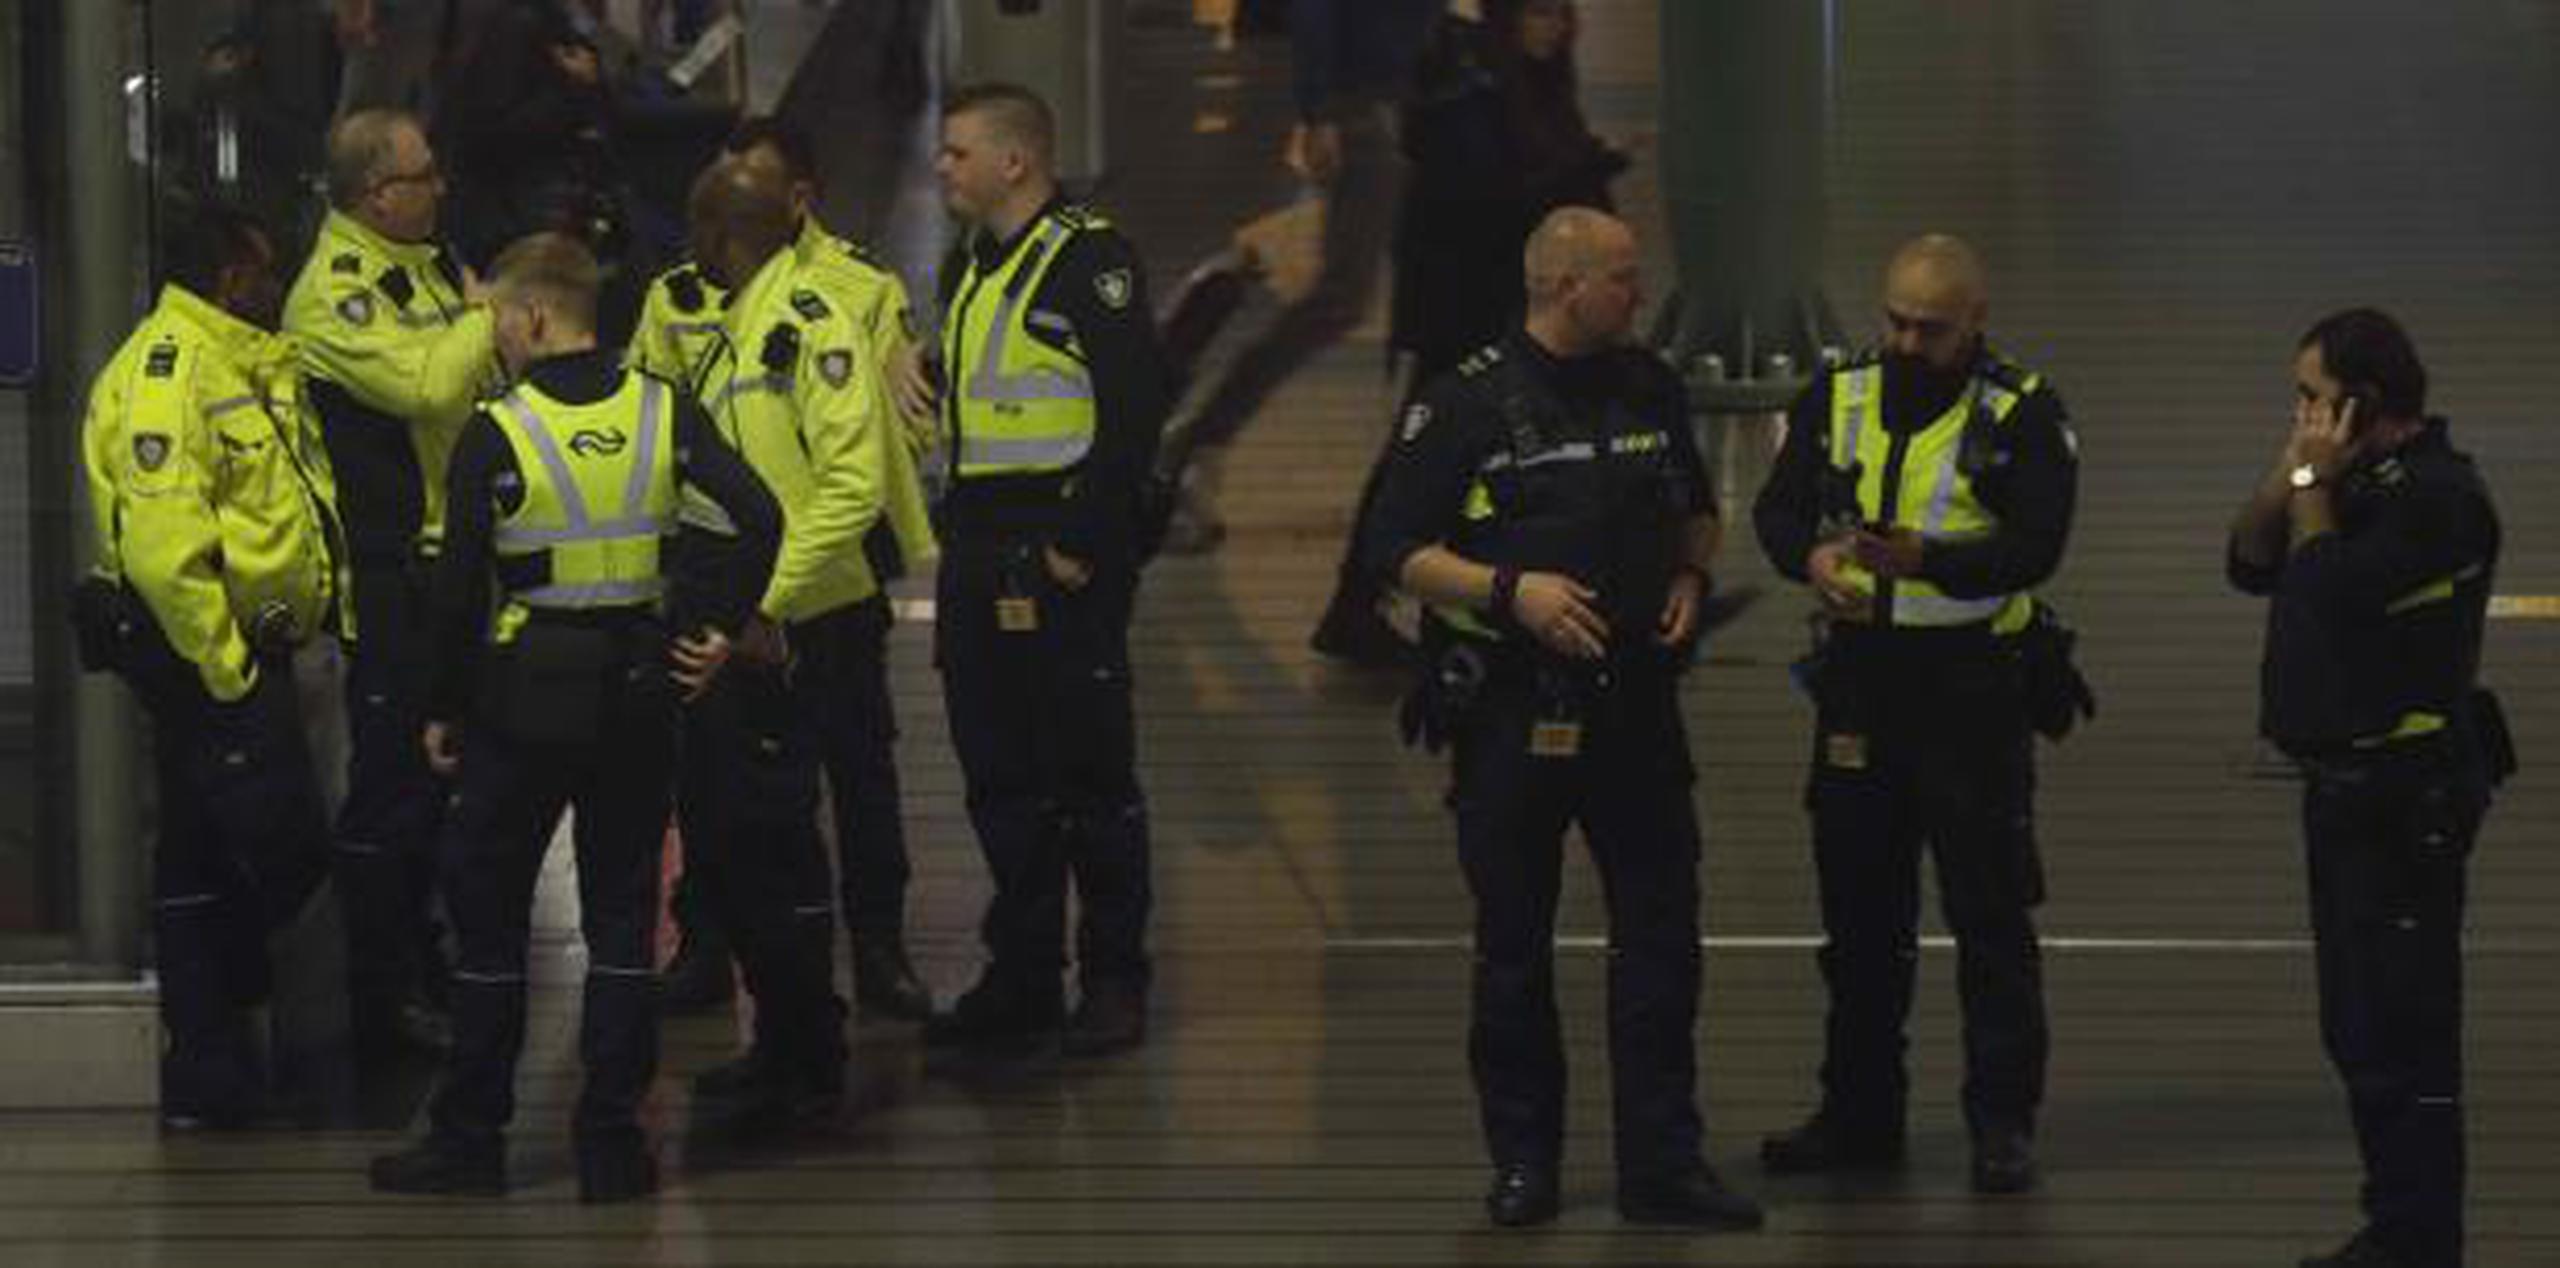 La alerta detonó una enorme operación de seguridad en el aeropuerto Schiphol. (AP / Peter Dejong)